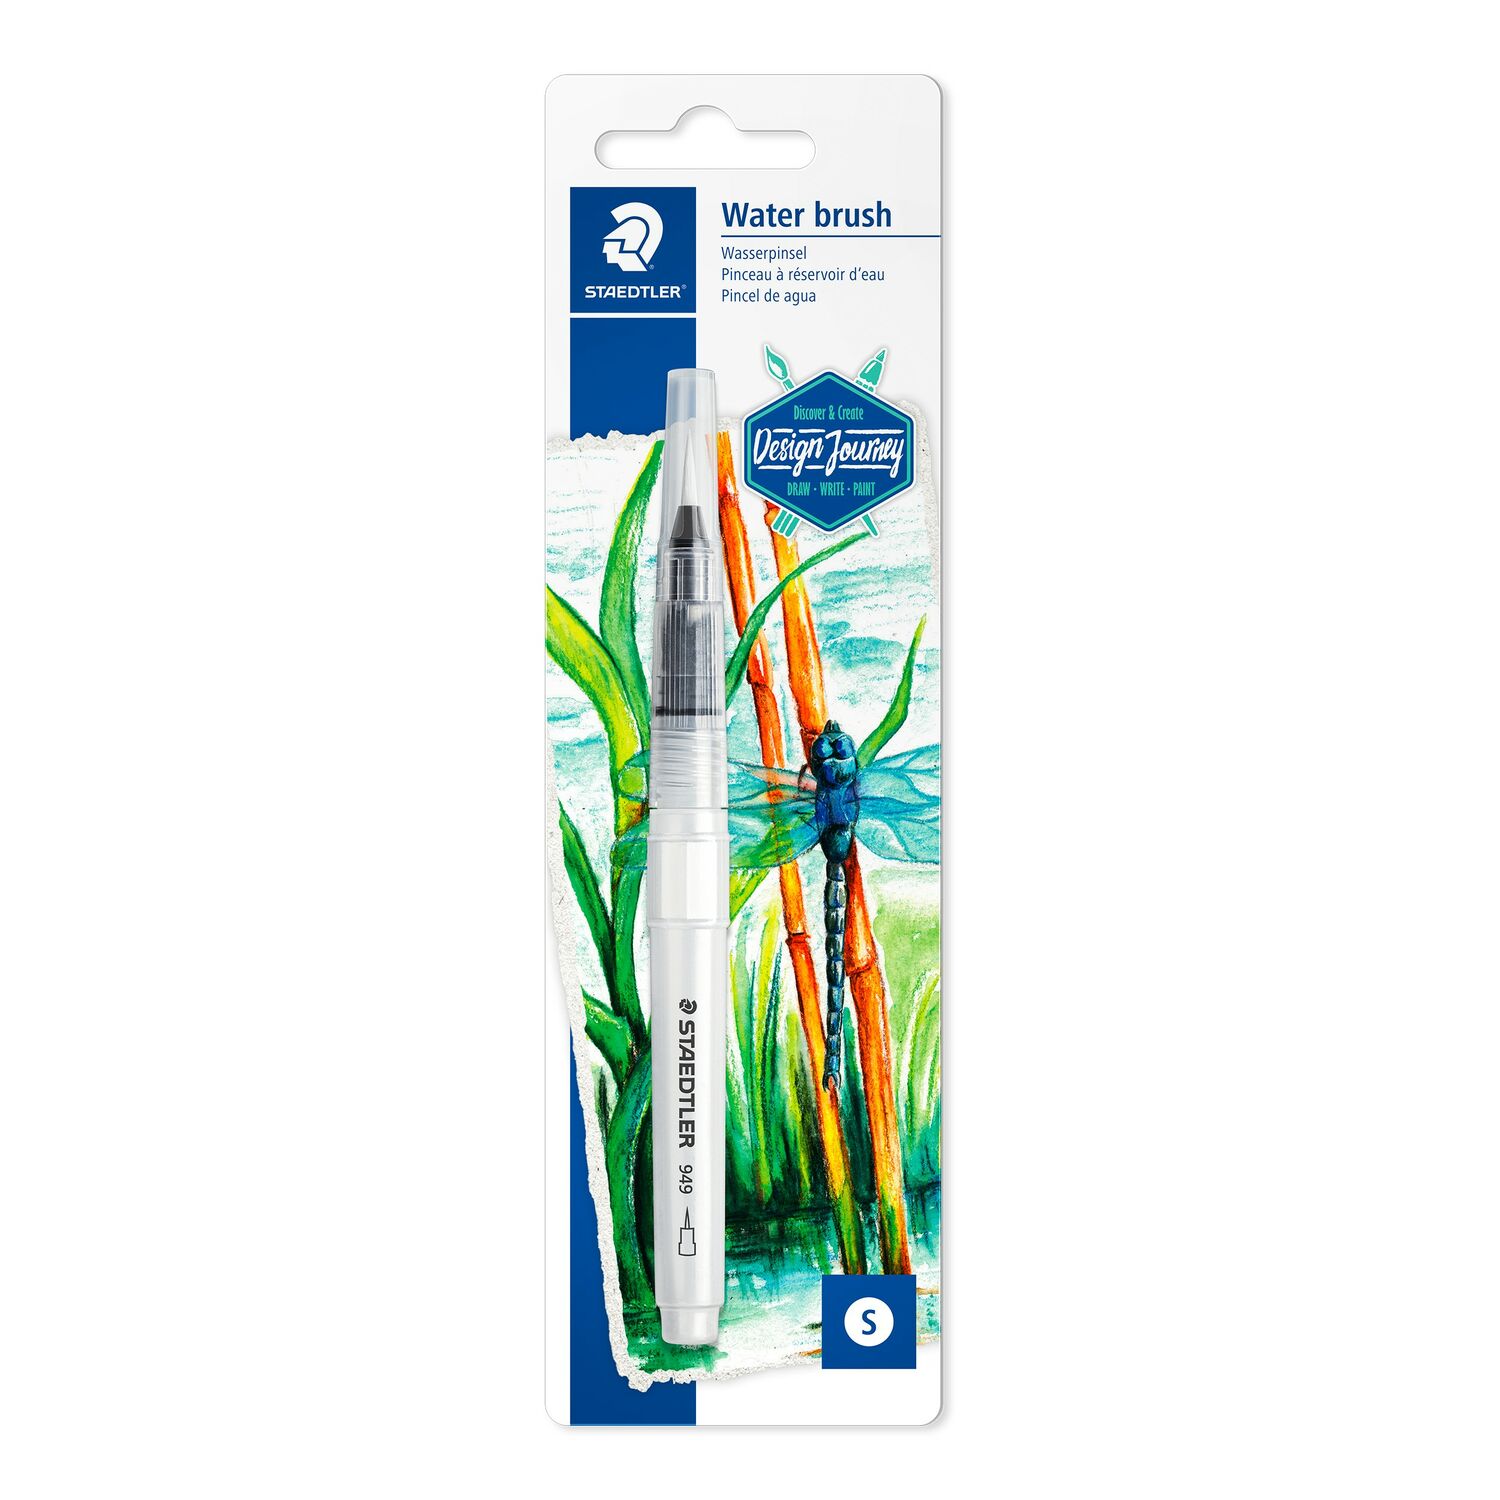 STAEDTLER® water brush 949 - Pincel de agua